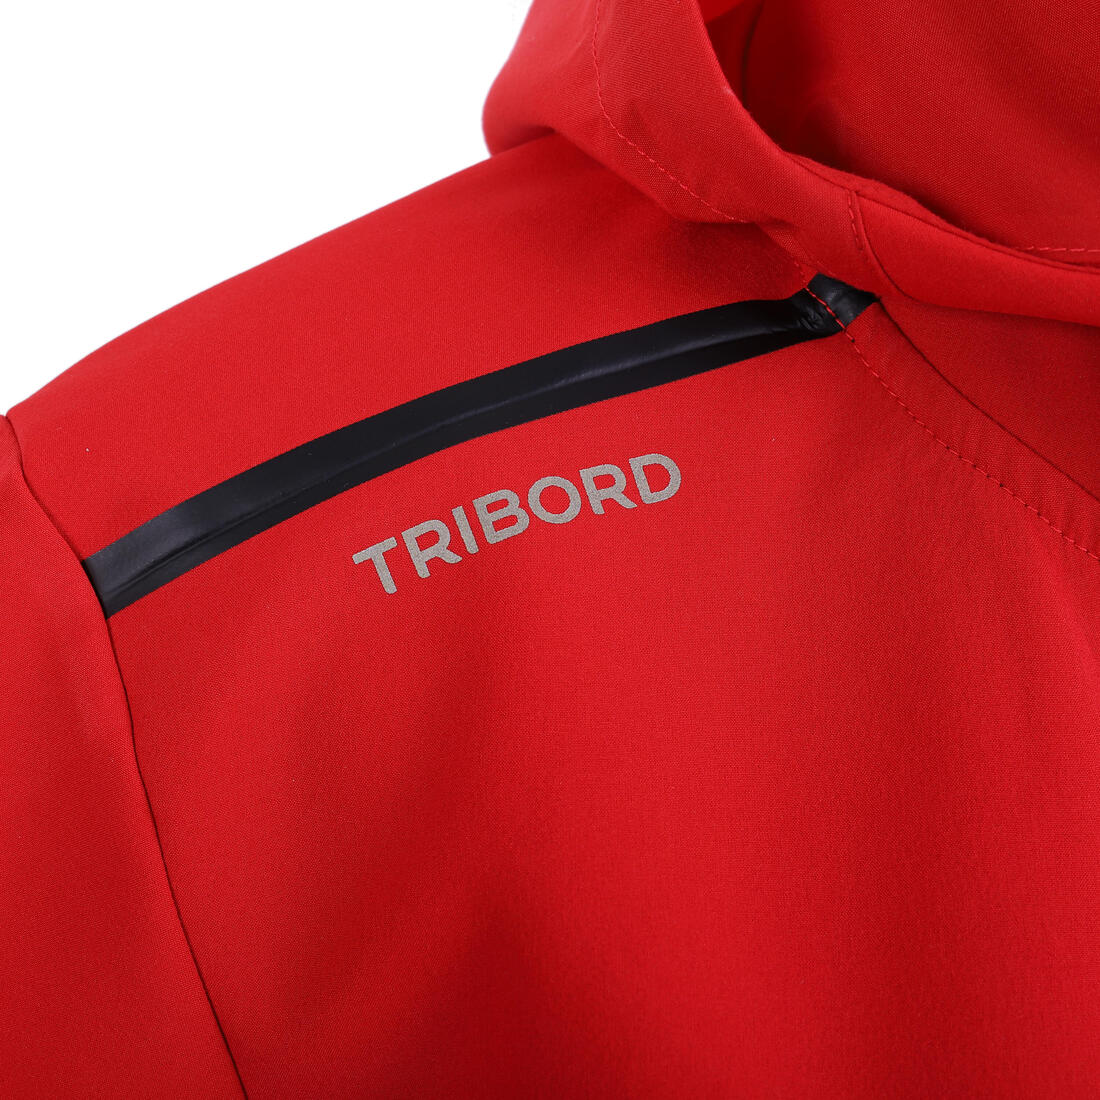 TRIBORD (トリボード) ヨット・セーリング ソフトシェル ジャケット レディース